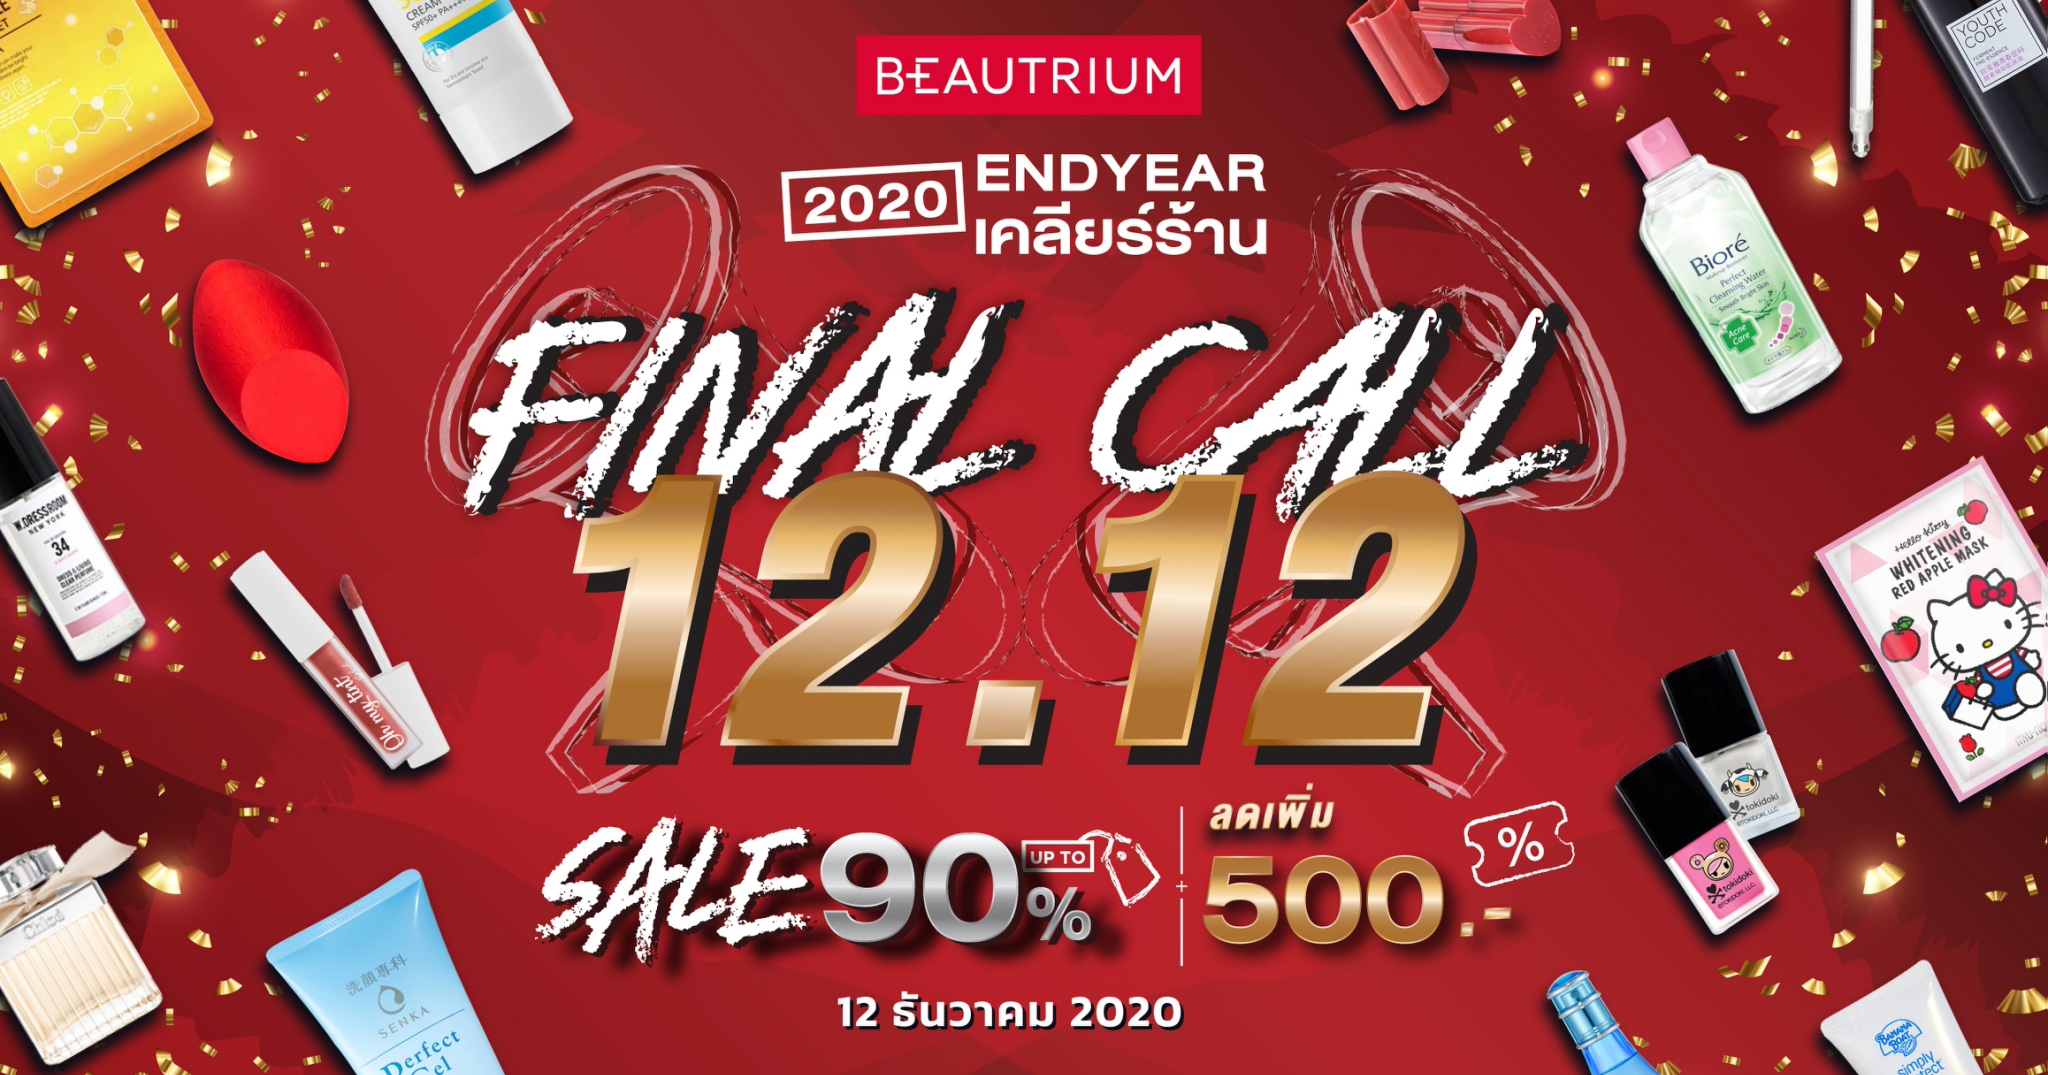 สรุปโปร Final call 12.12.2020 ENDYEAR เคลียร์ร้าน Sale 90% ลดแรงระดับเคลียร์แล๊นส์ V2